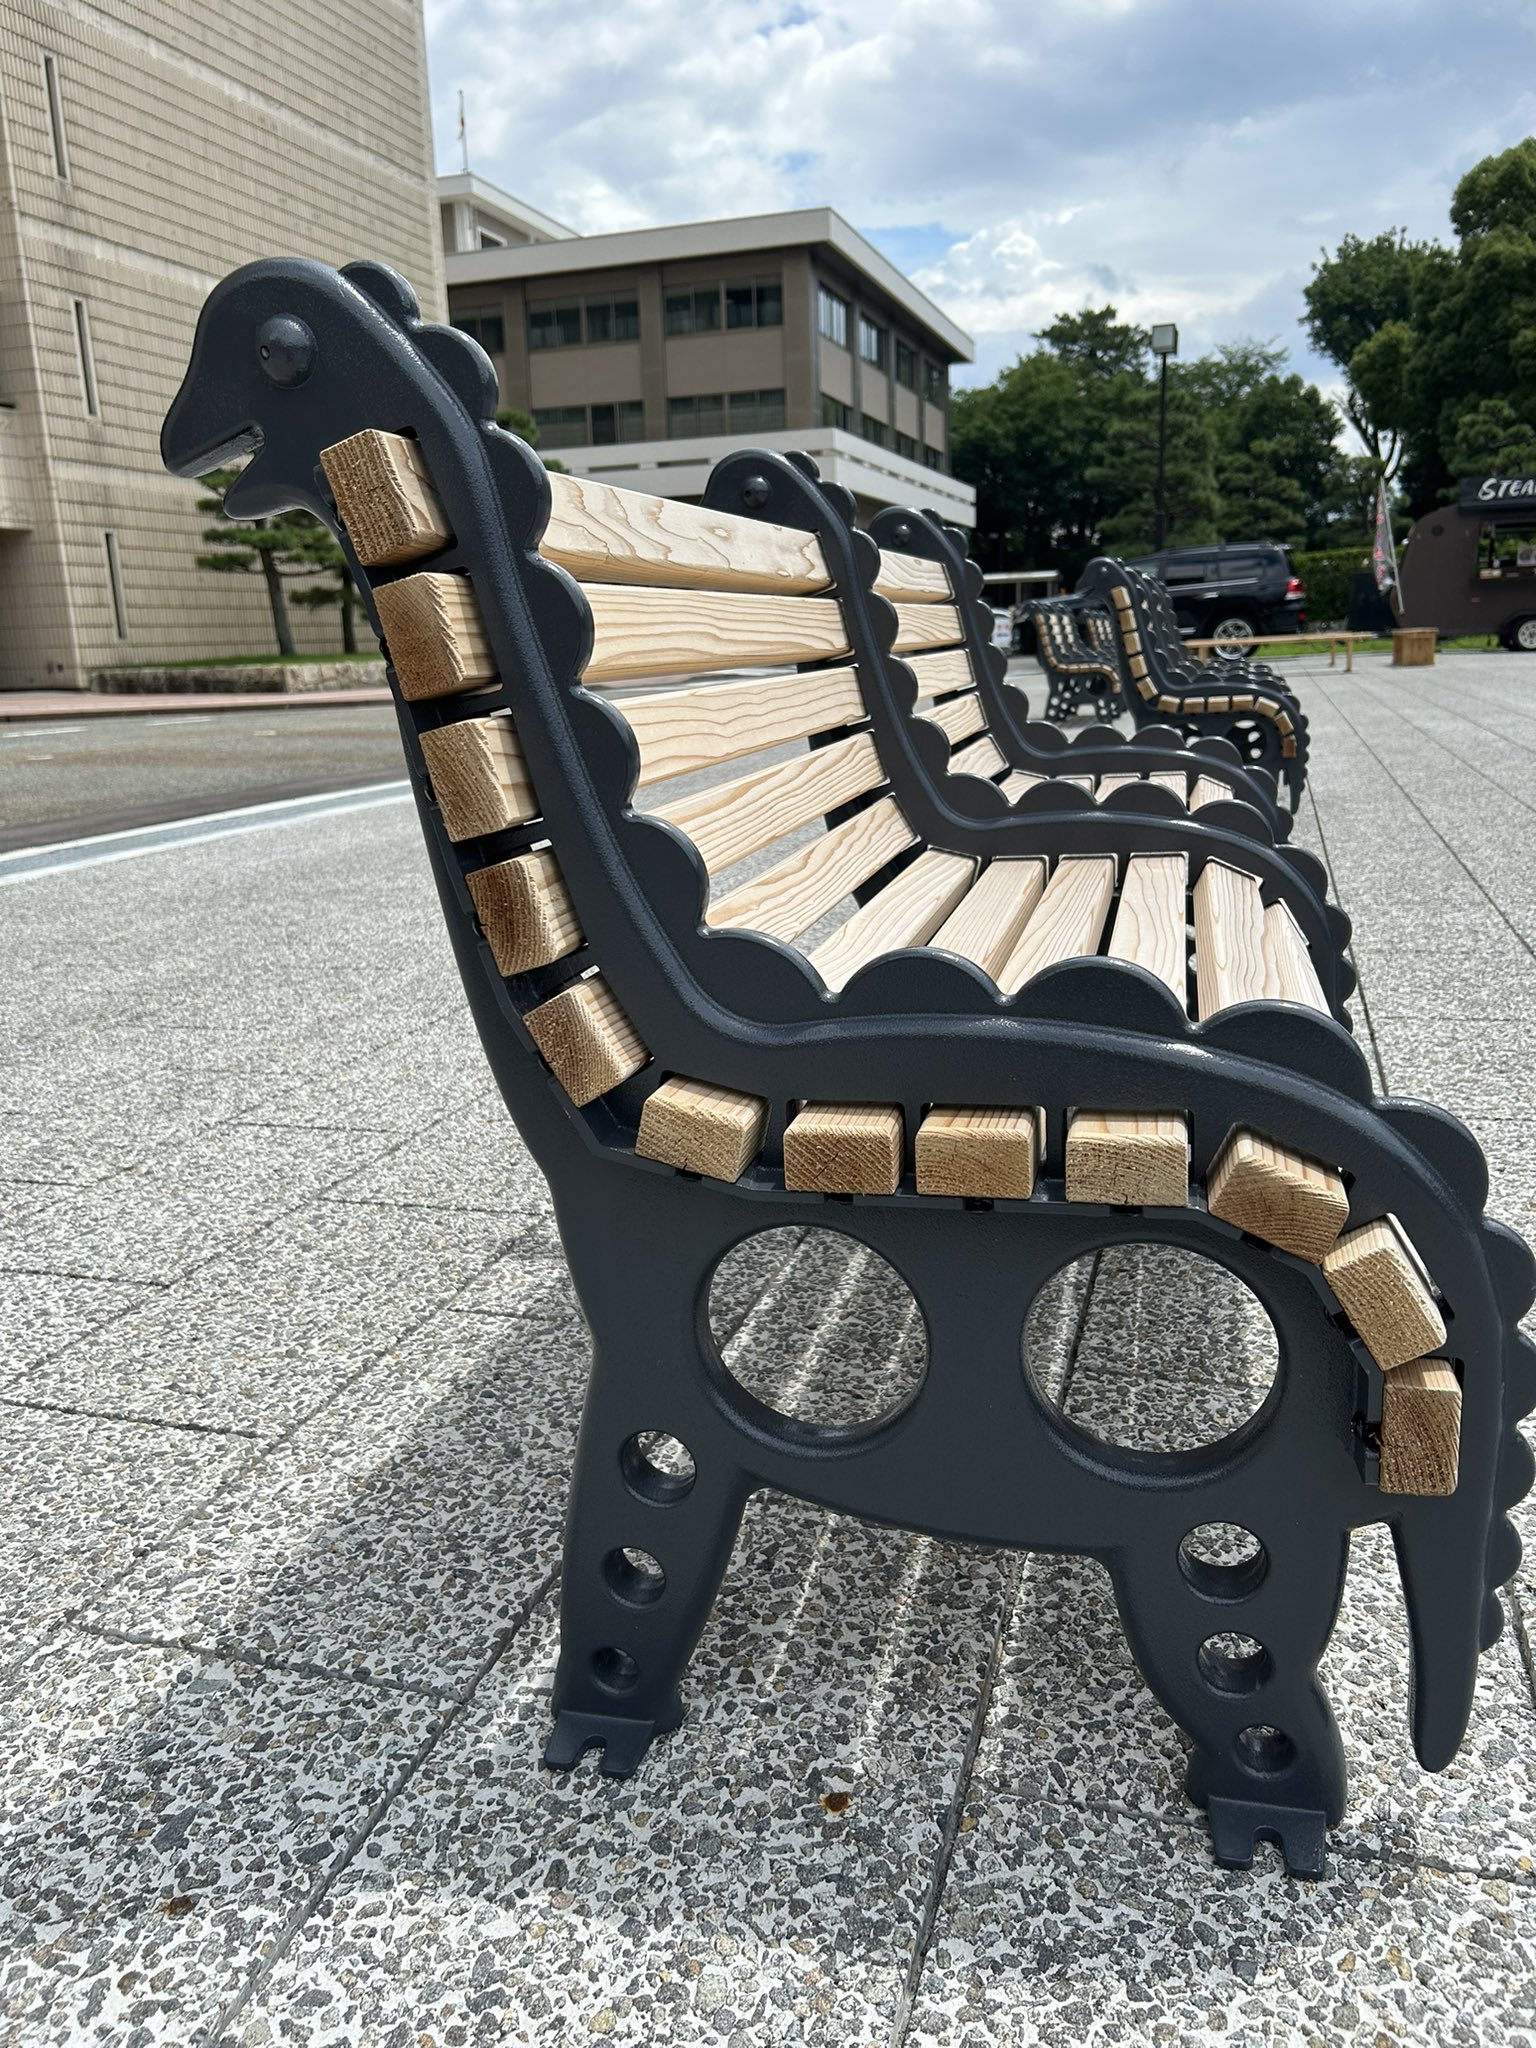 La préfecture de Fukui possède des bancs de dinosaures et est connue pour ses musées de dinosaures. Environ 80 % de tous les fossiles de dinosaures du Japon se trouvent à Fukui.